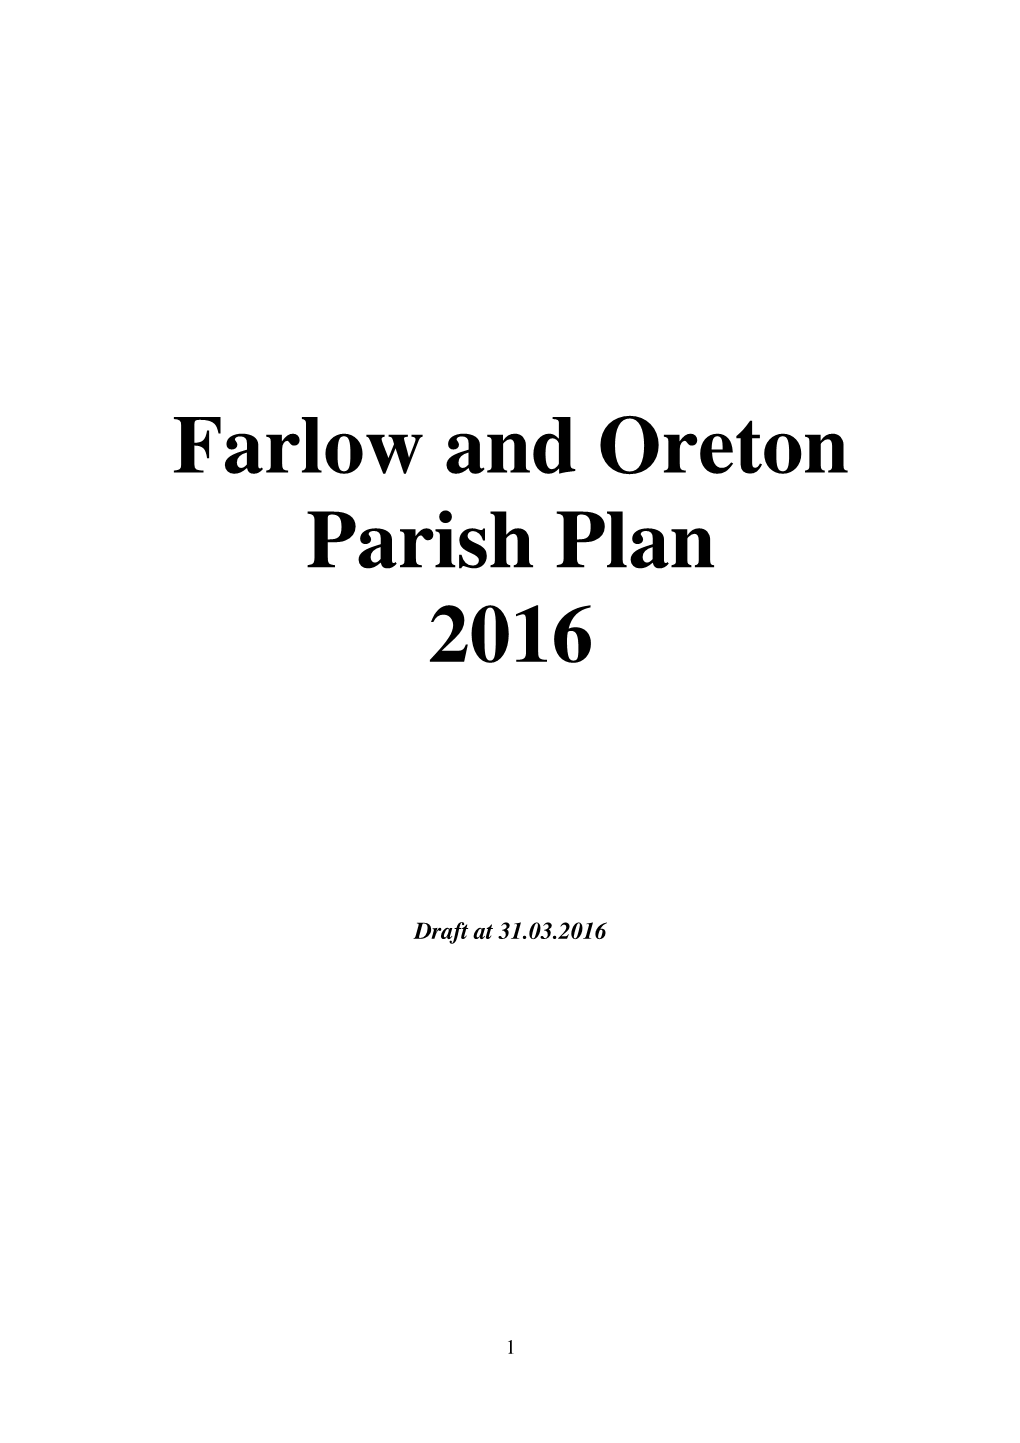 Farlow and Oreton Parish Plan 2016